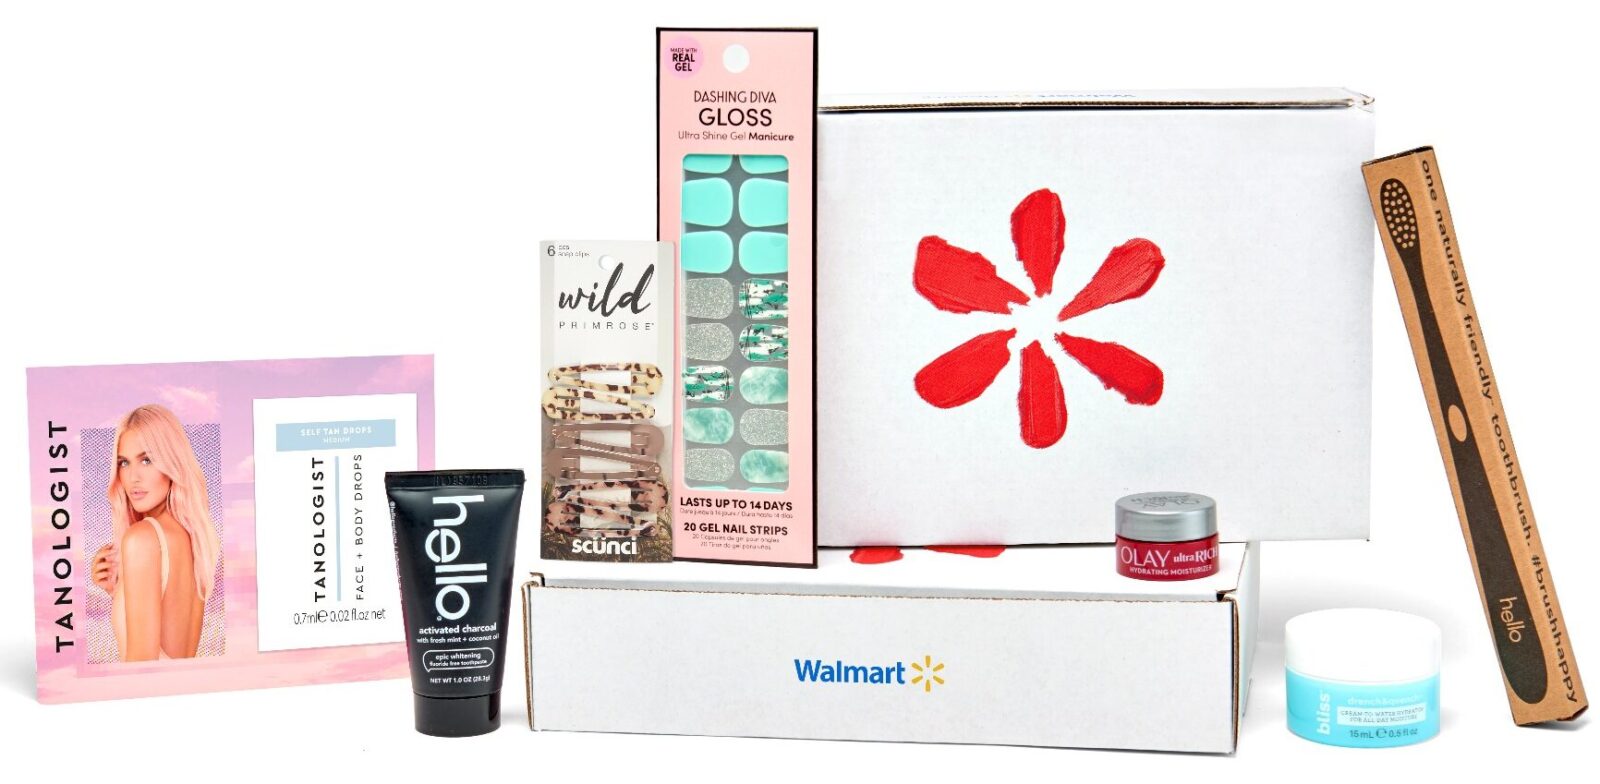 walmart box e1622753216131 - Walmart Beauty Box just $6.98 Shipped!